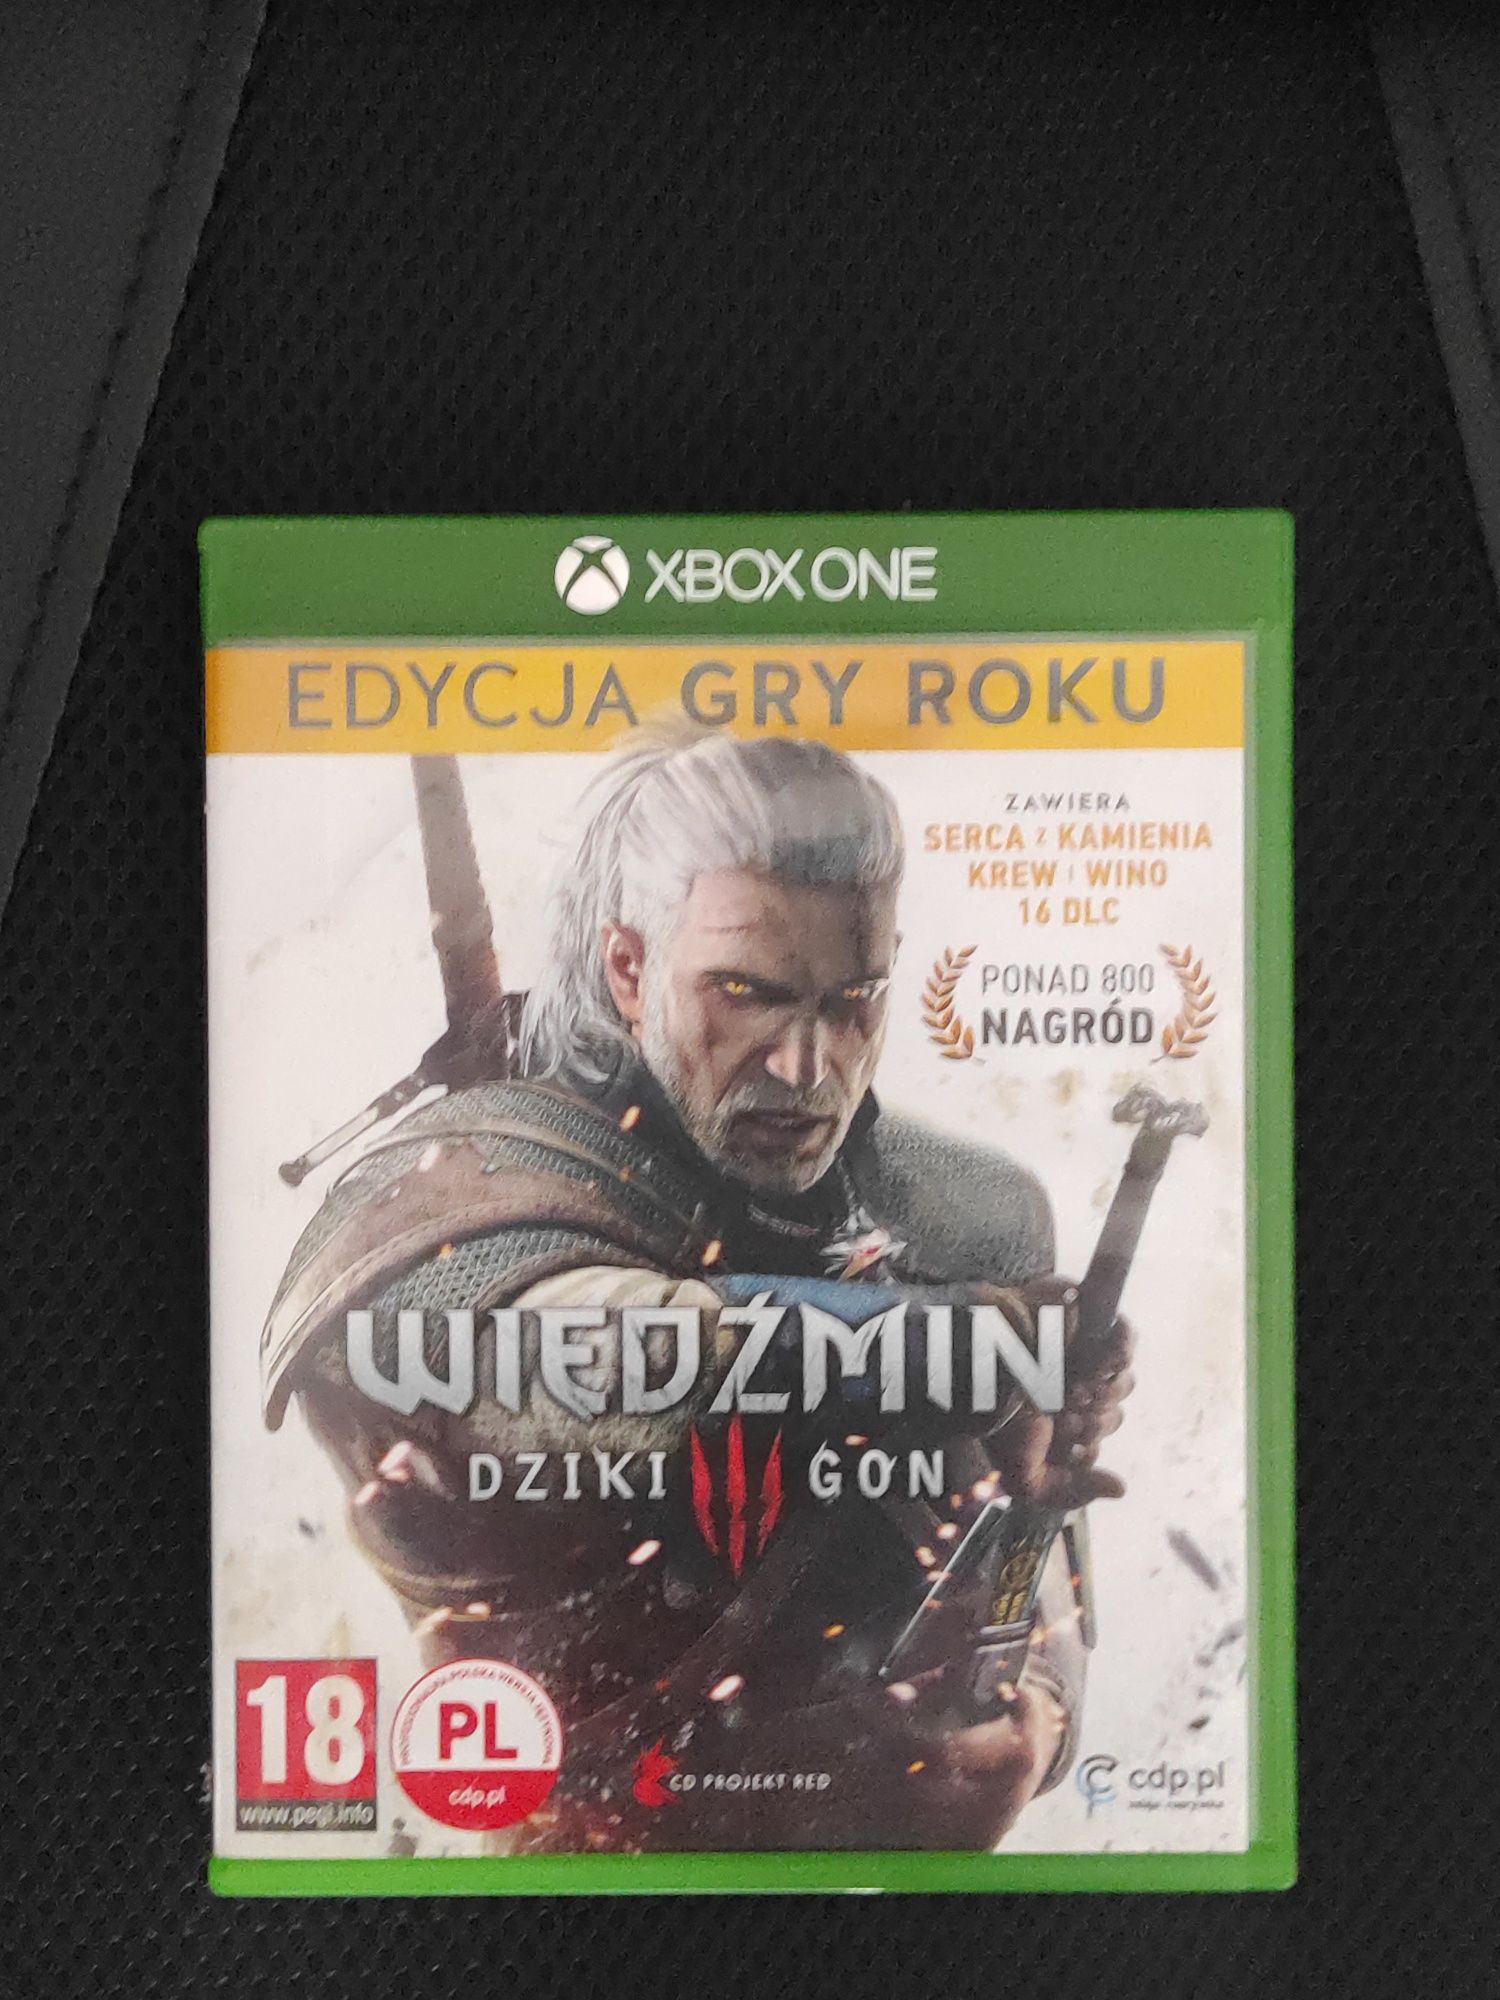 Wiedźmin 3 edycja gry roku Xbox one